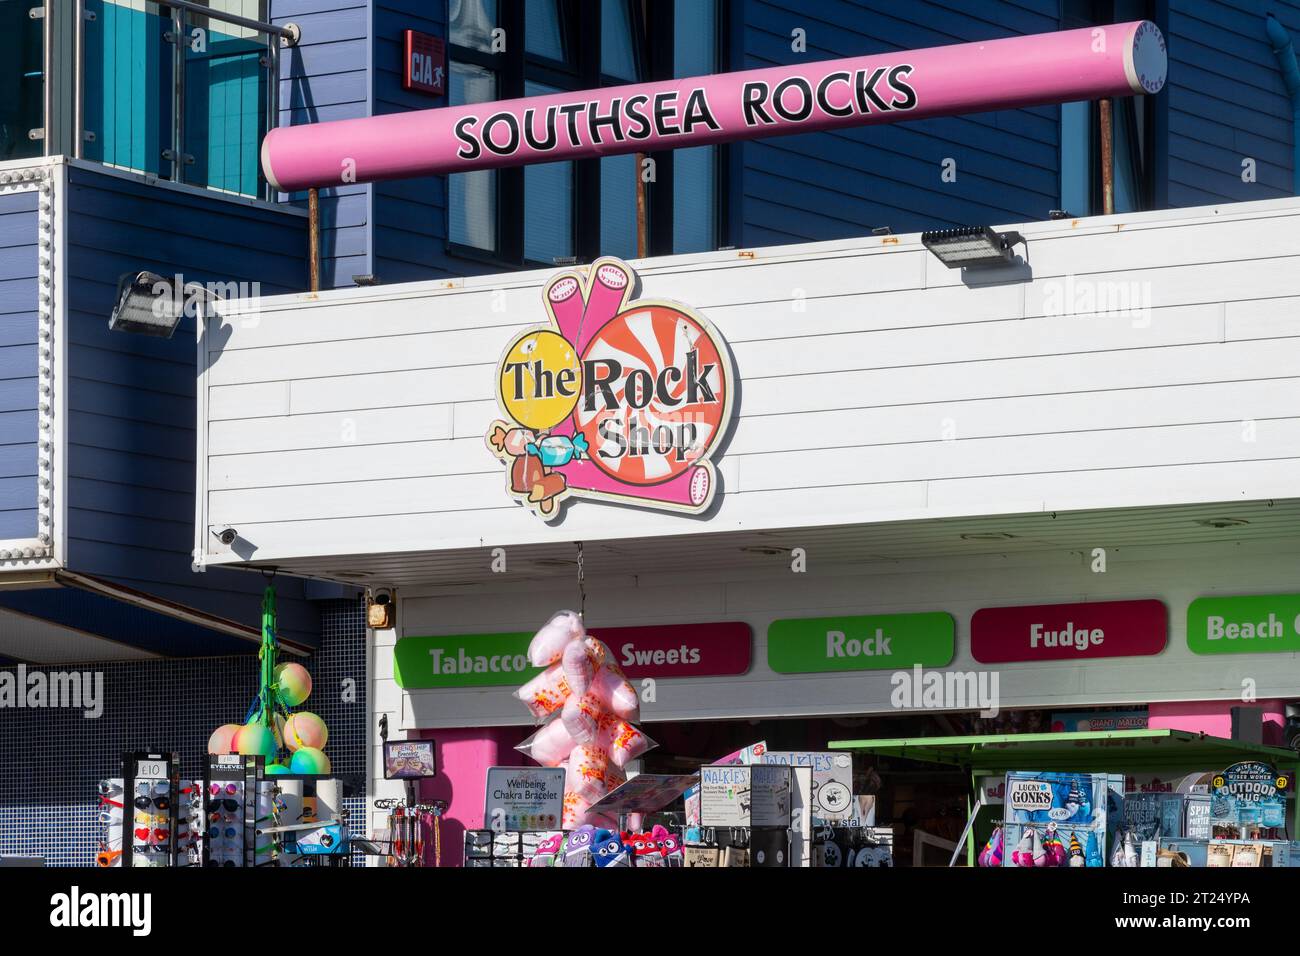 The Rock Shop confiserie balnéaire ou boutique de bonbons, Clarence Pier, Southsea, Portsmouth, Hampshire, Angleterre, Royaume-Uni Banque D'Images